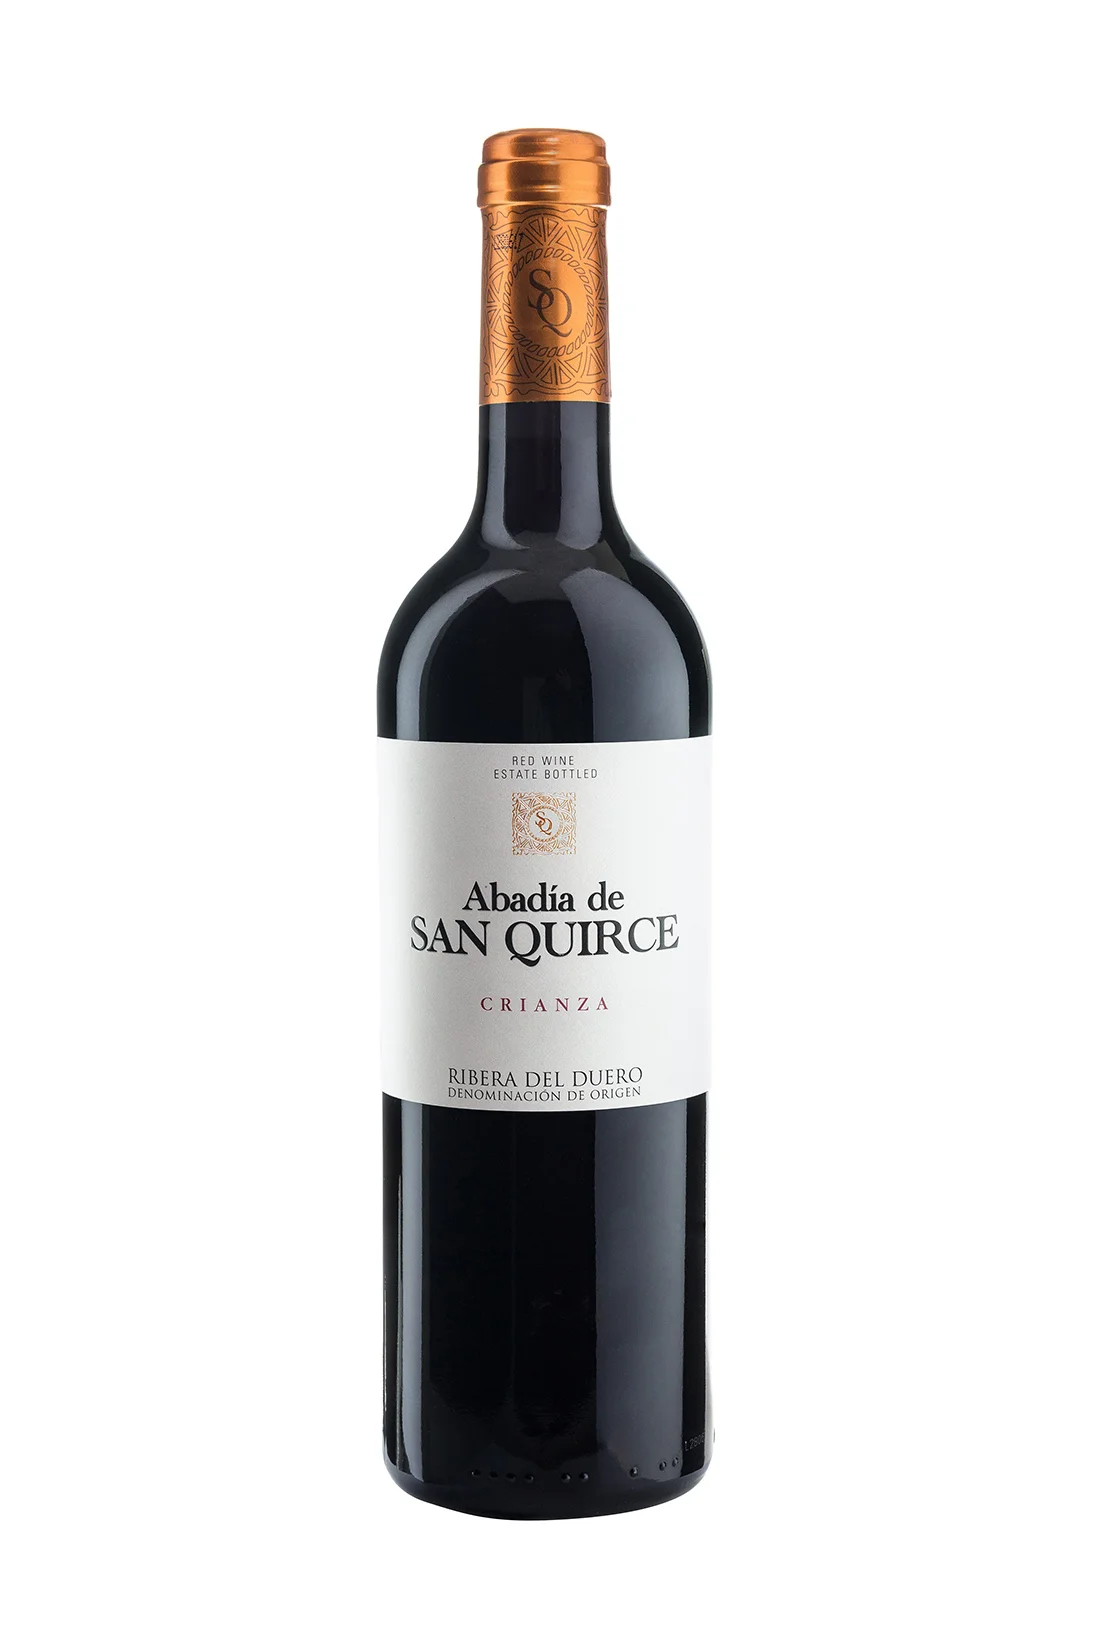 San | Wine Quirce bar Duero del | The Abadía - Ribera Crianza | Guy tastings shop